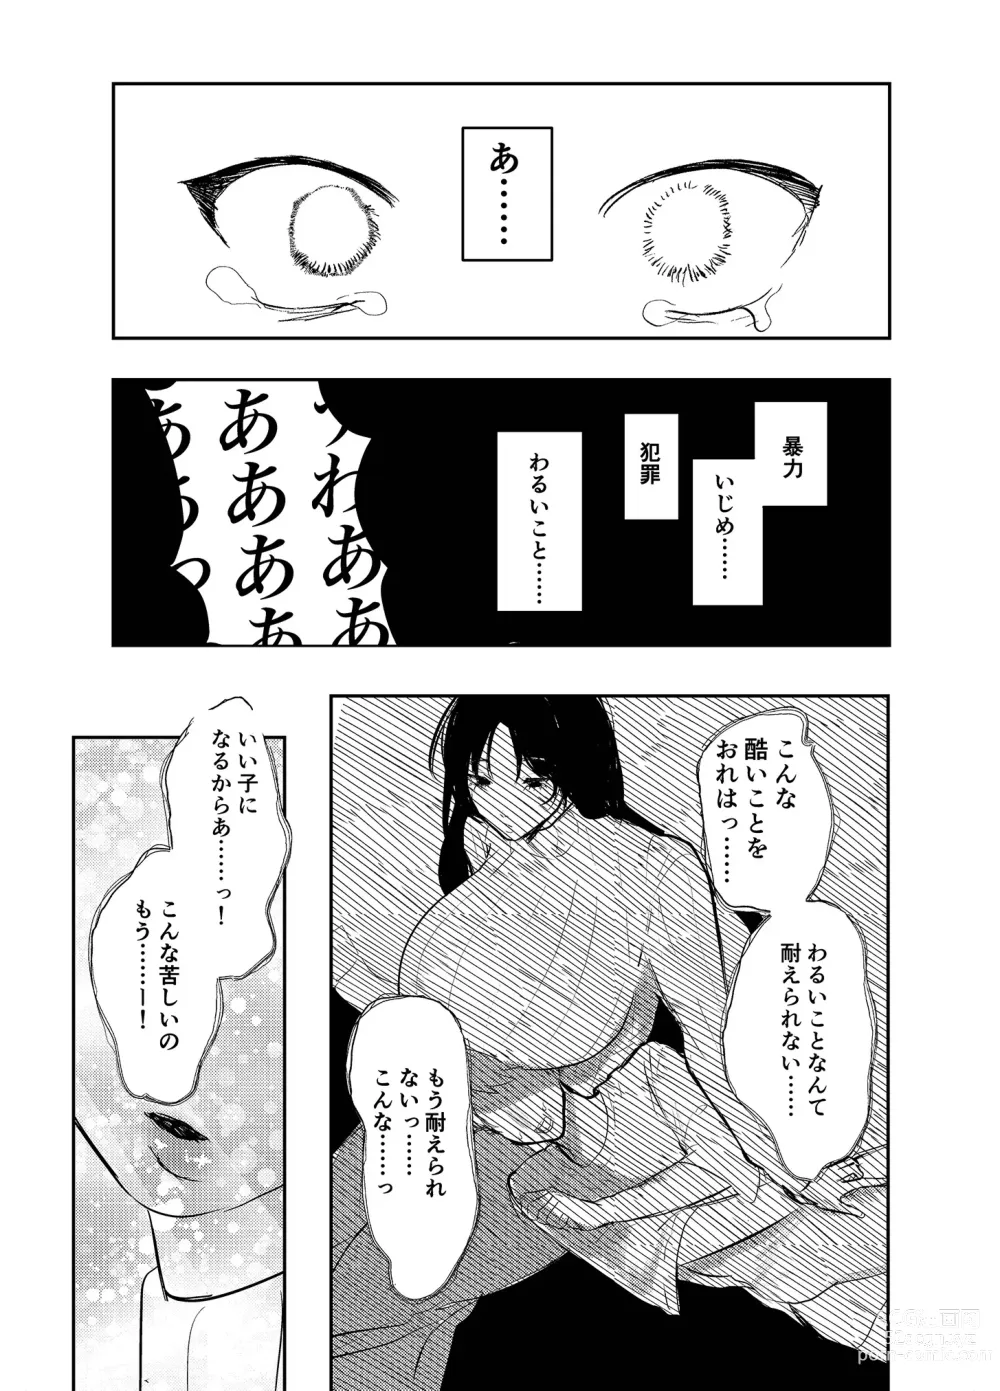 Page 23 of doujinshi Warui ko tettei kyouiku dekkai o neesan niiko ni kyousei sa reru hanashi